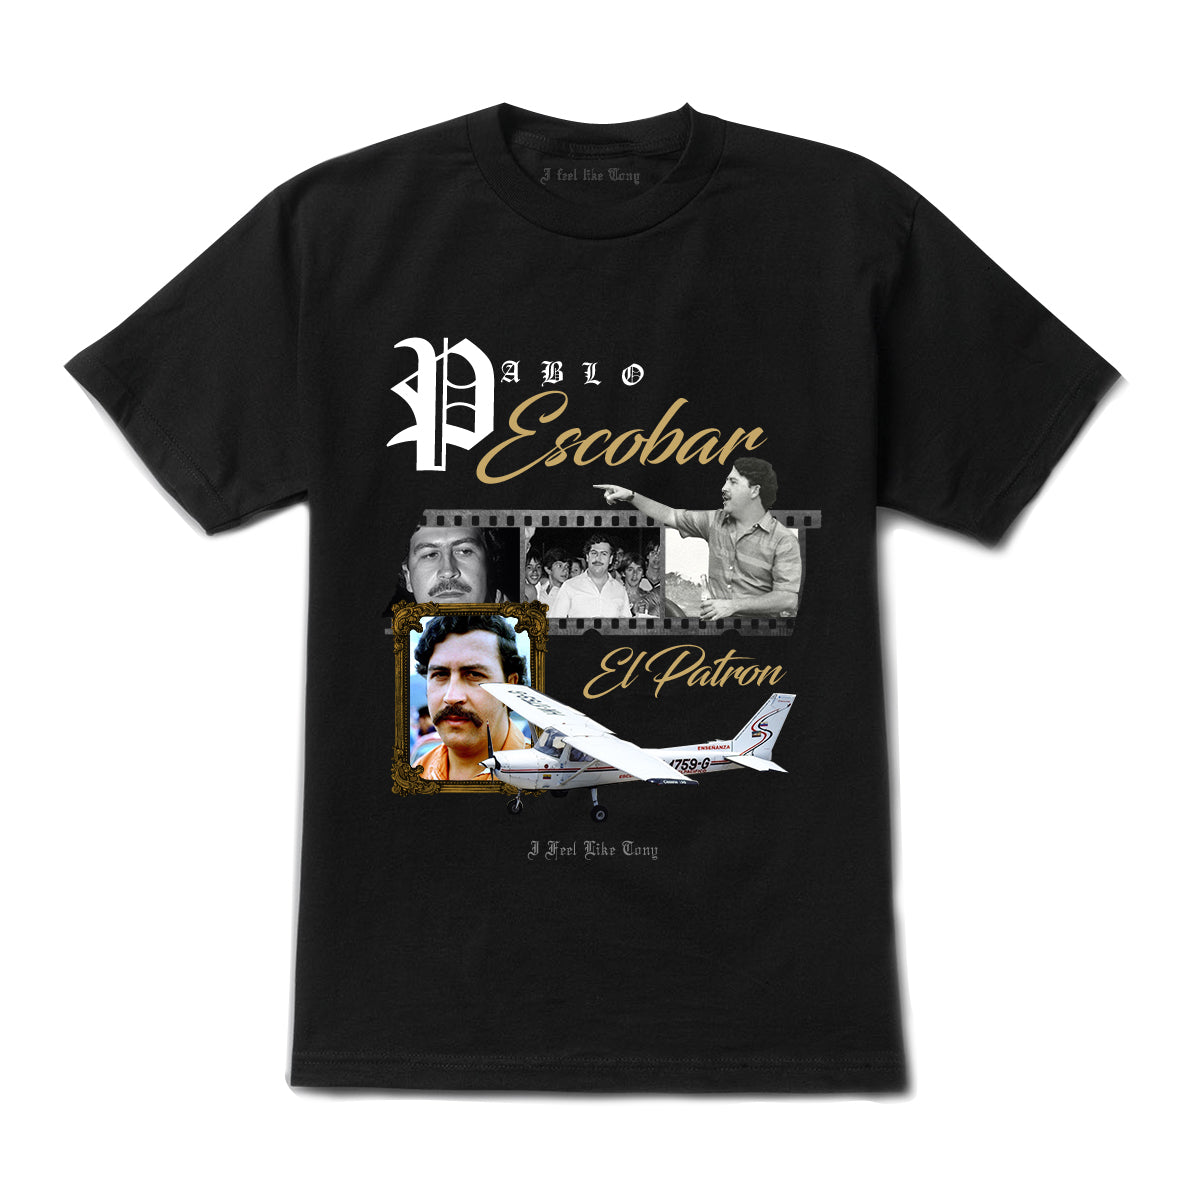 Pablo Escobar El Patron